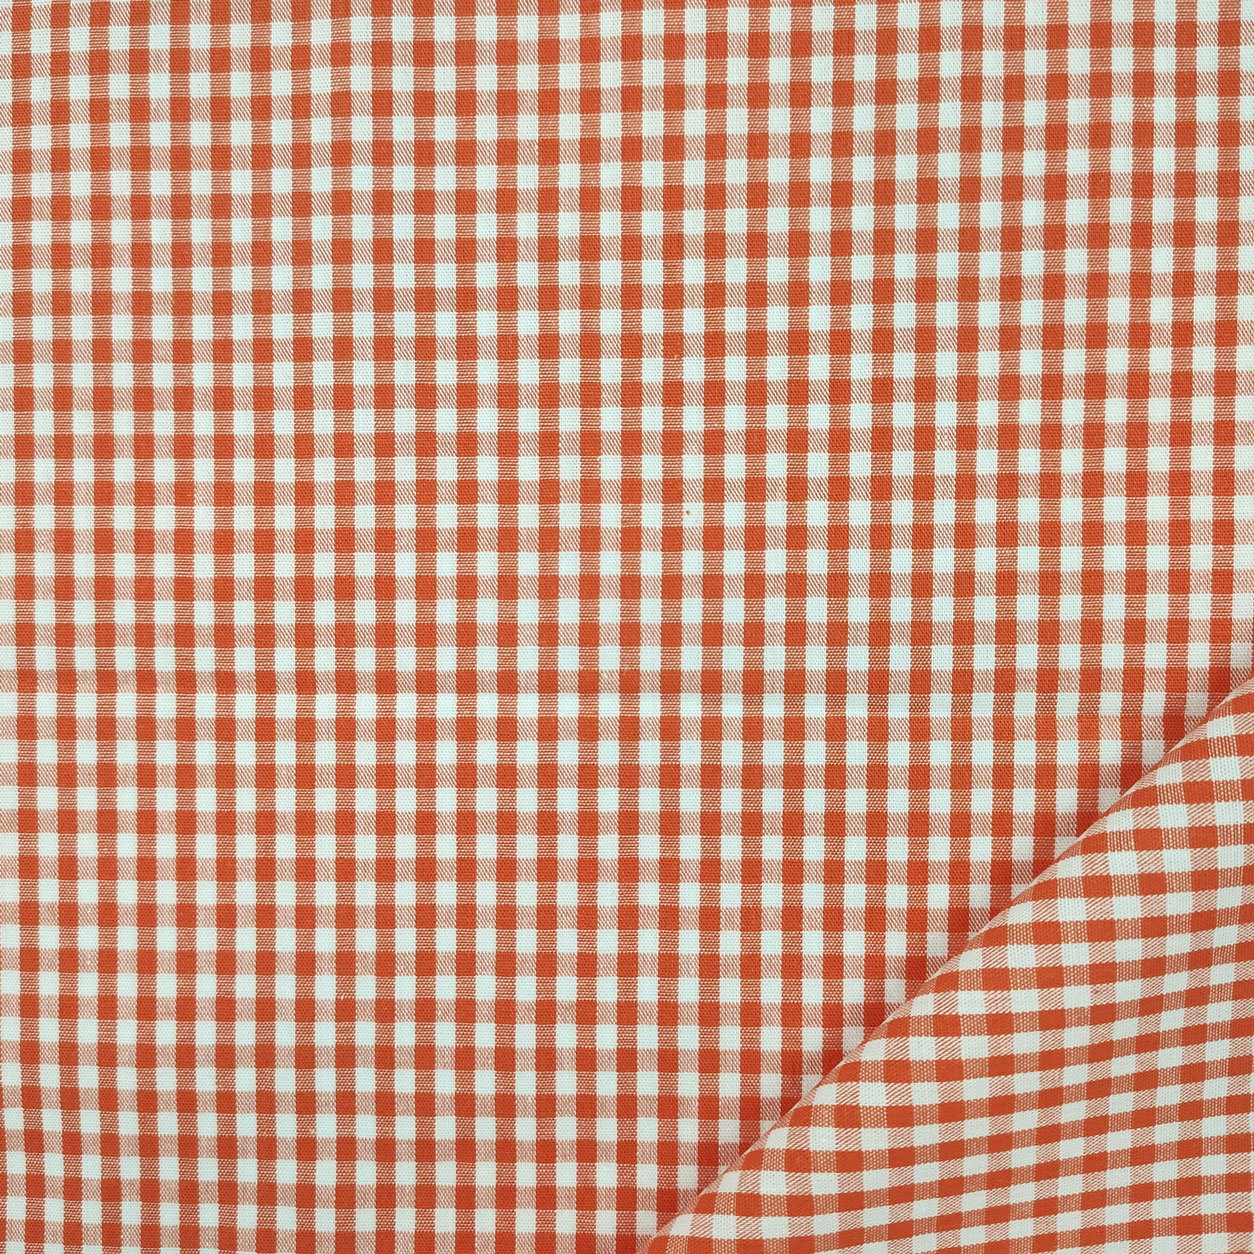 Cotone leggero quadretti medi tinto in filo arancione